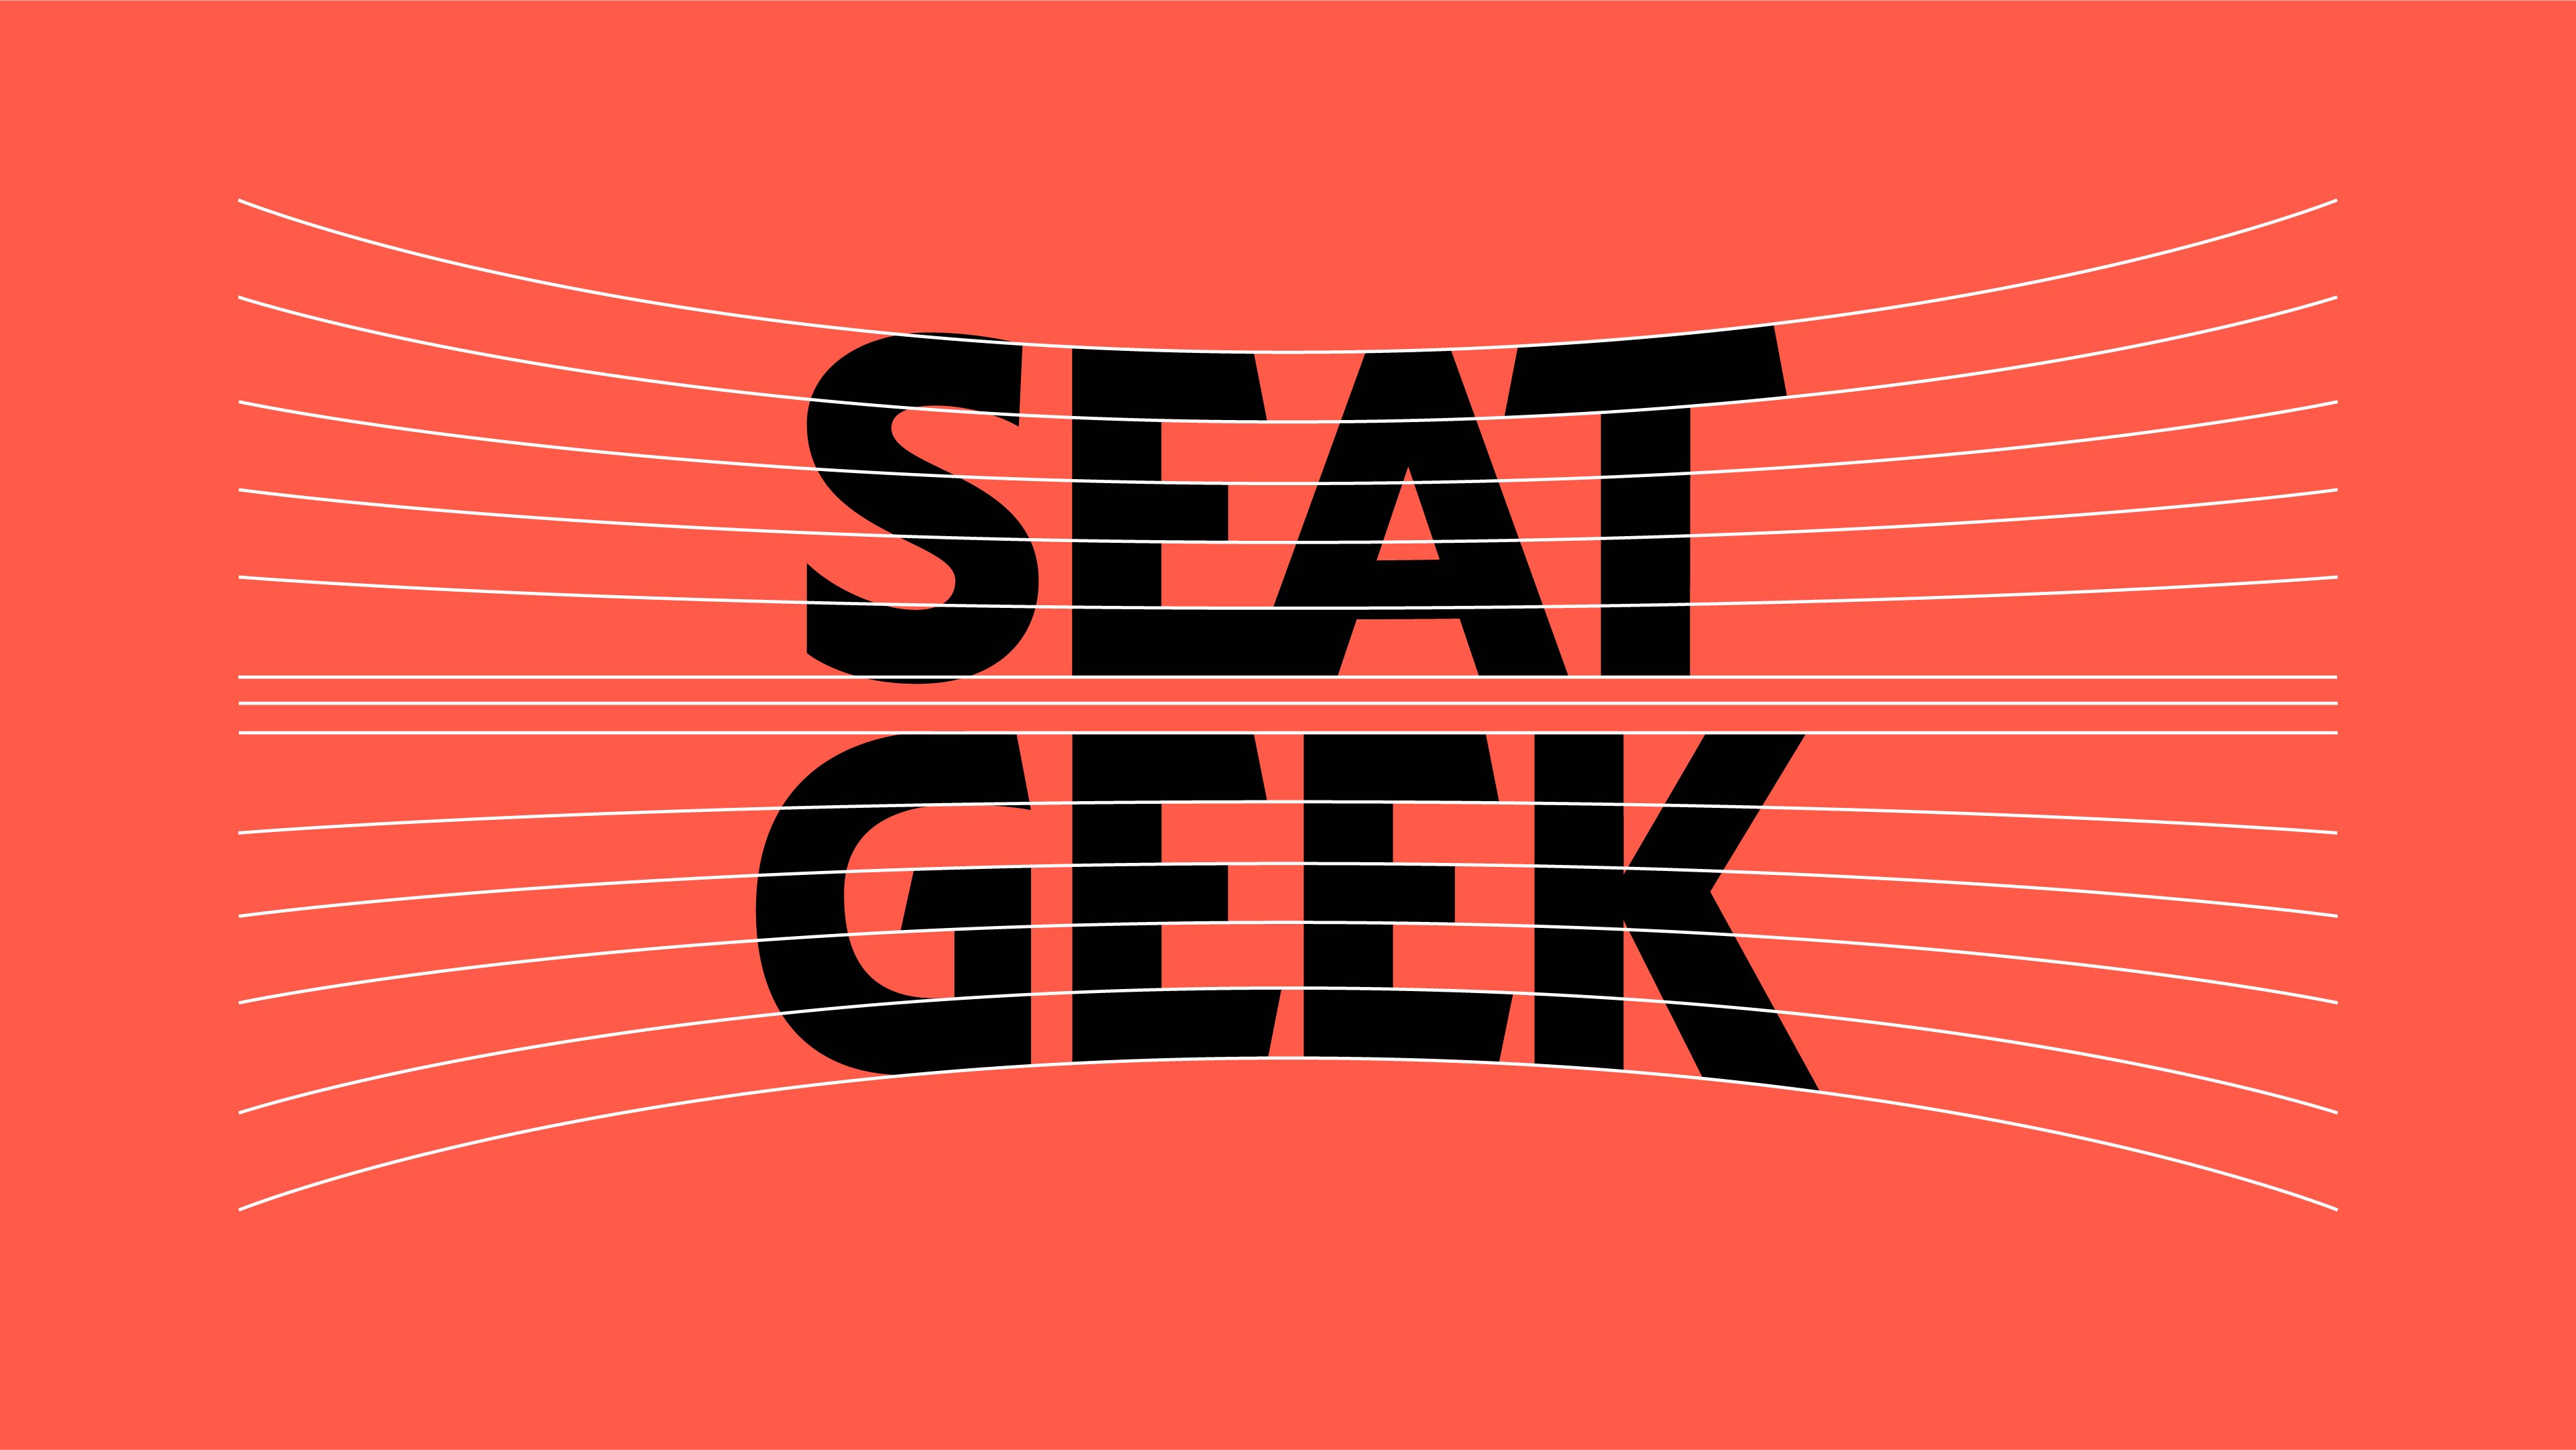 SeatGeek custom wordmark guidelines